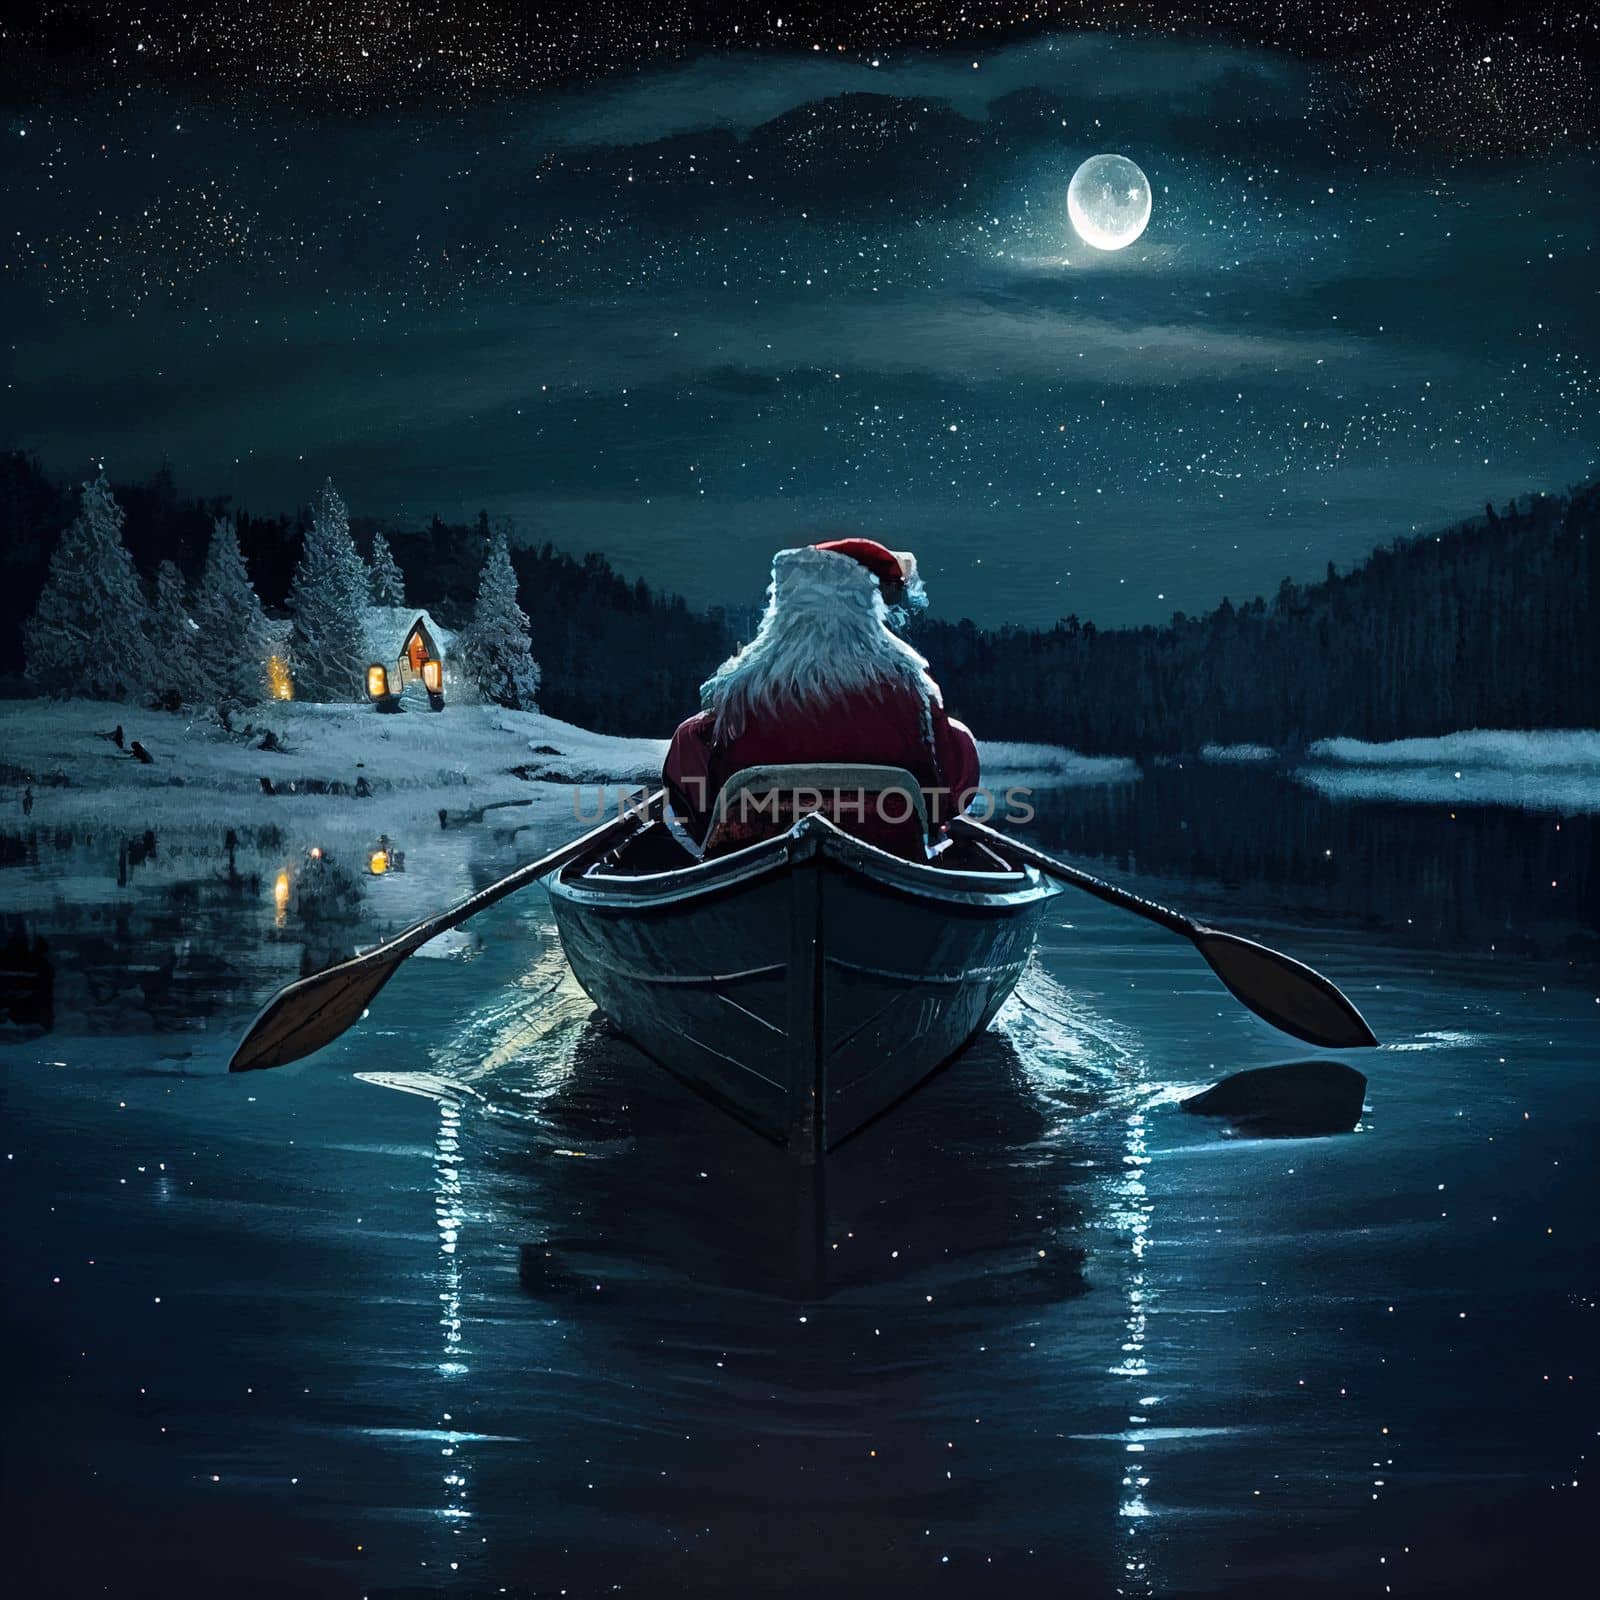 Santa rowing boat bringing gifts. Santa Claus rowing boat on Christmas eve at night by igor010